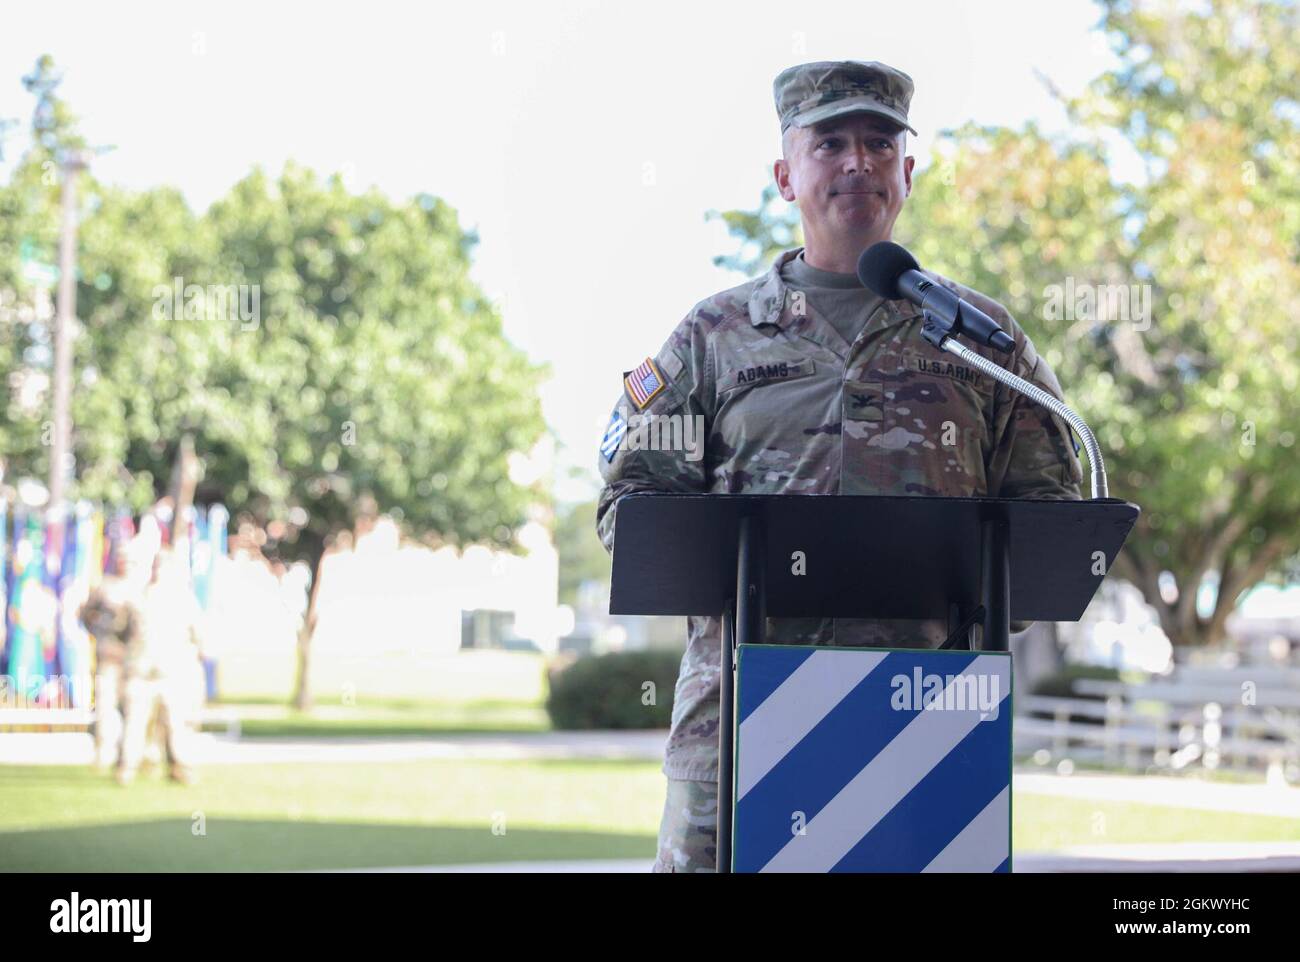 Oberst Michael Adams, Stabschef der 3. Infanterie-Division, nimmt während seiner Abschiedszeremonie in Fort Stewart, Georgia, am 14. Juli 2021 seine letzten Bemerkungen vor der 3. ID vor. Während seiner gesamten Zeit in der Armee hat Adams 11 Jahre als Dogfaced Soldier verbracht. Stockfoto